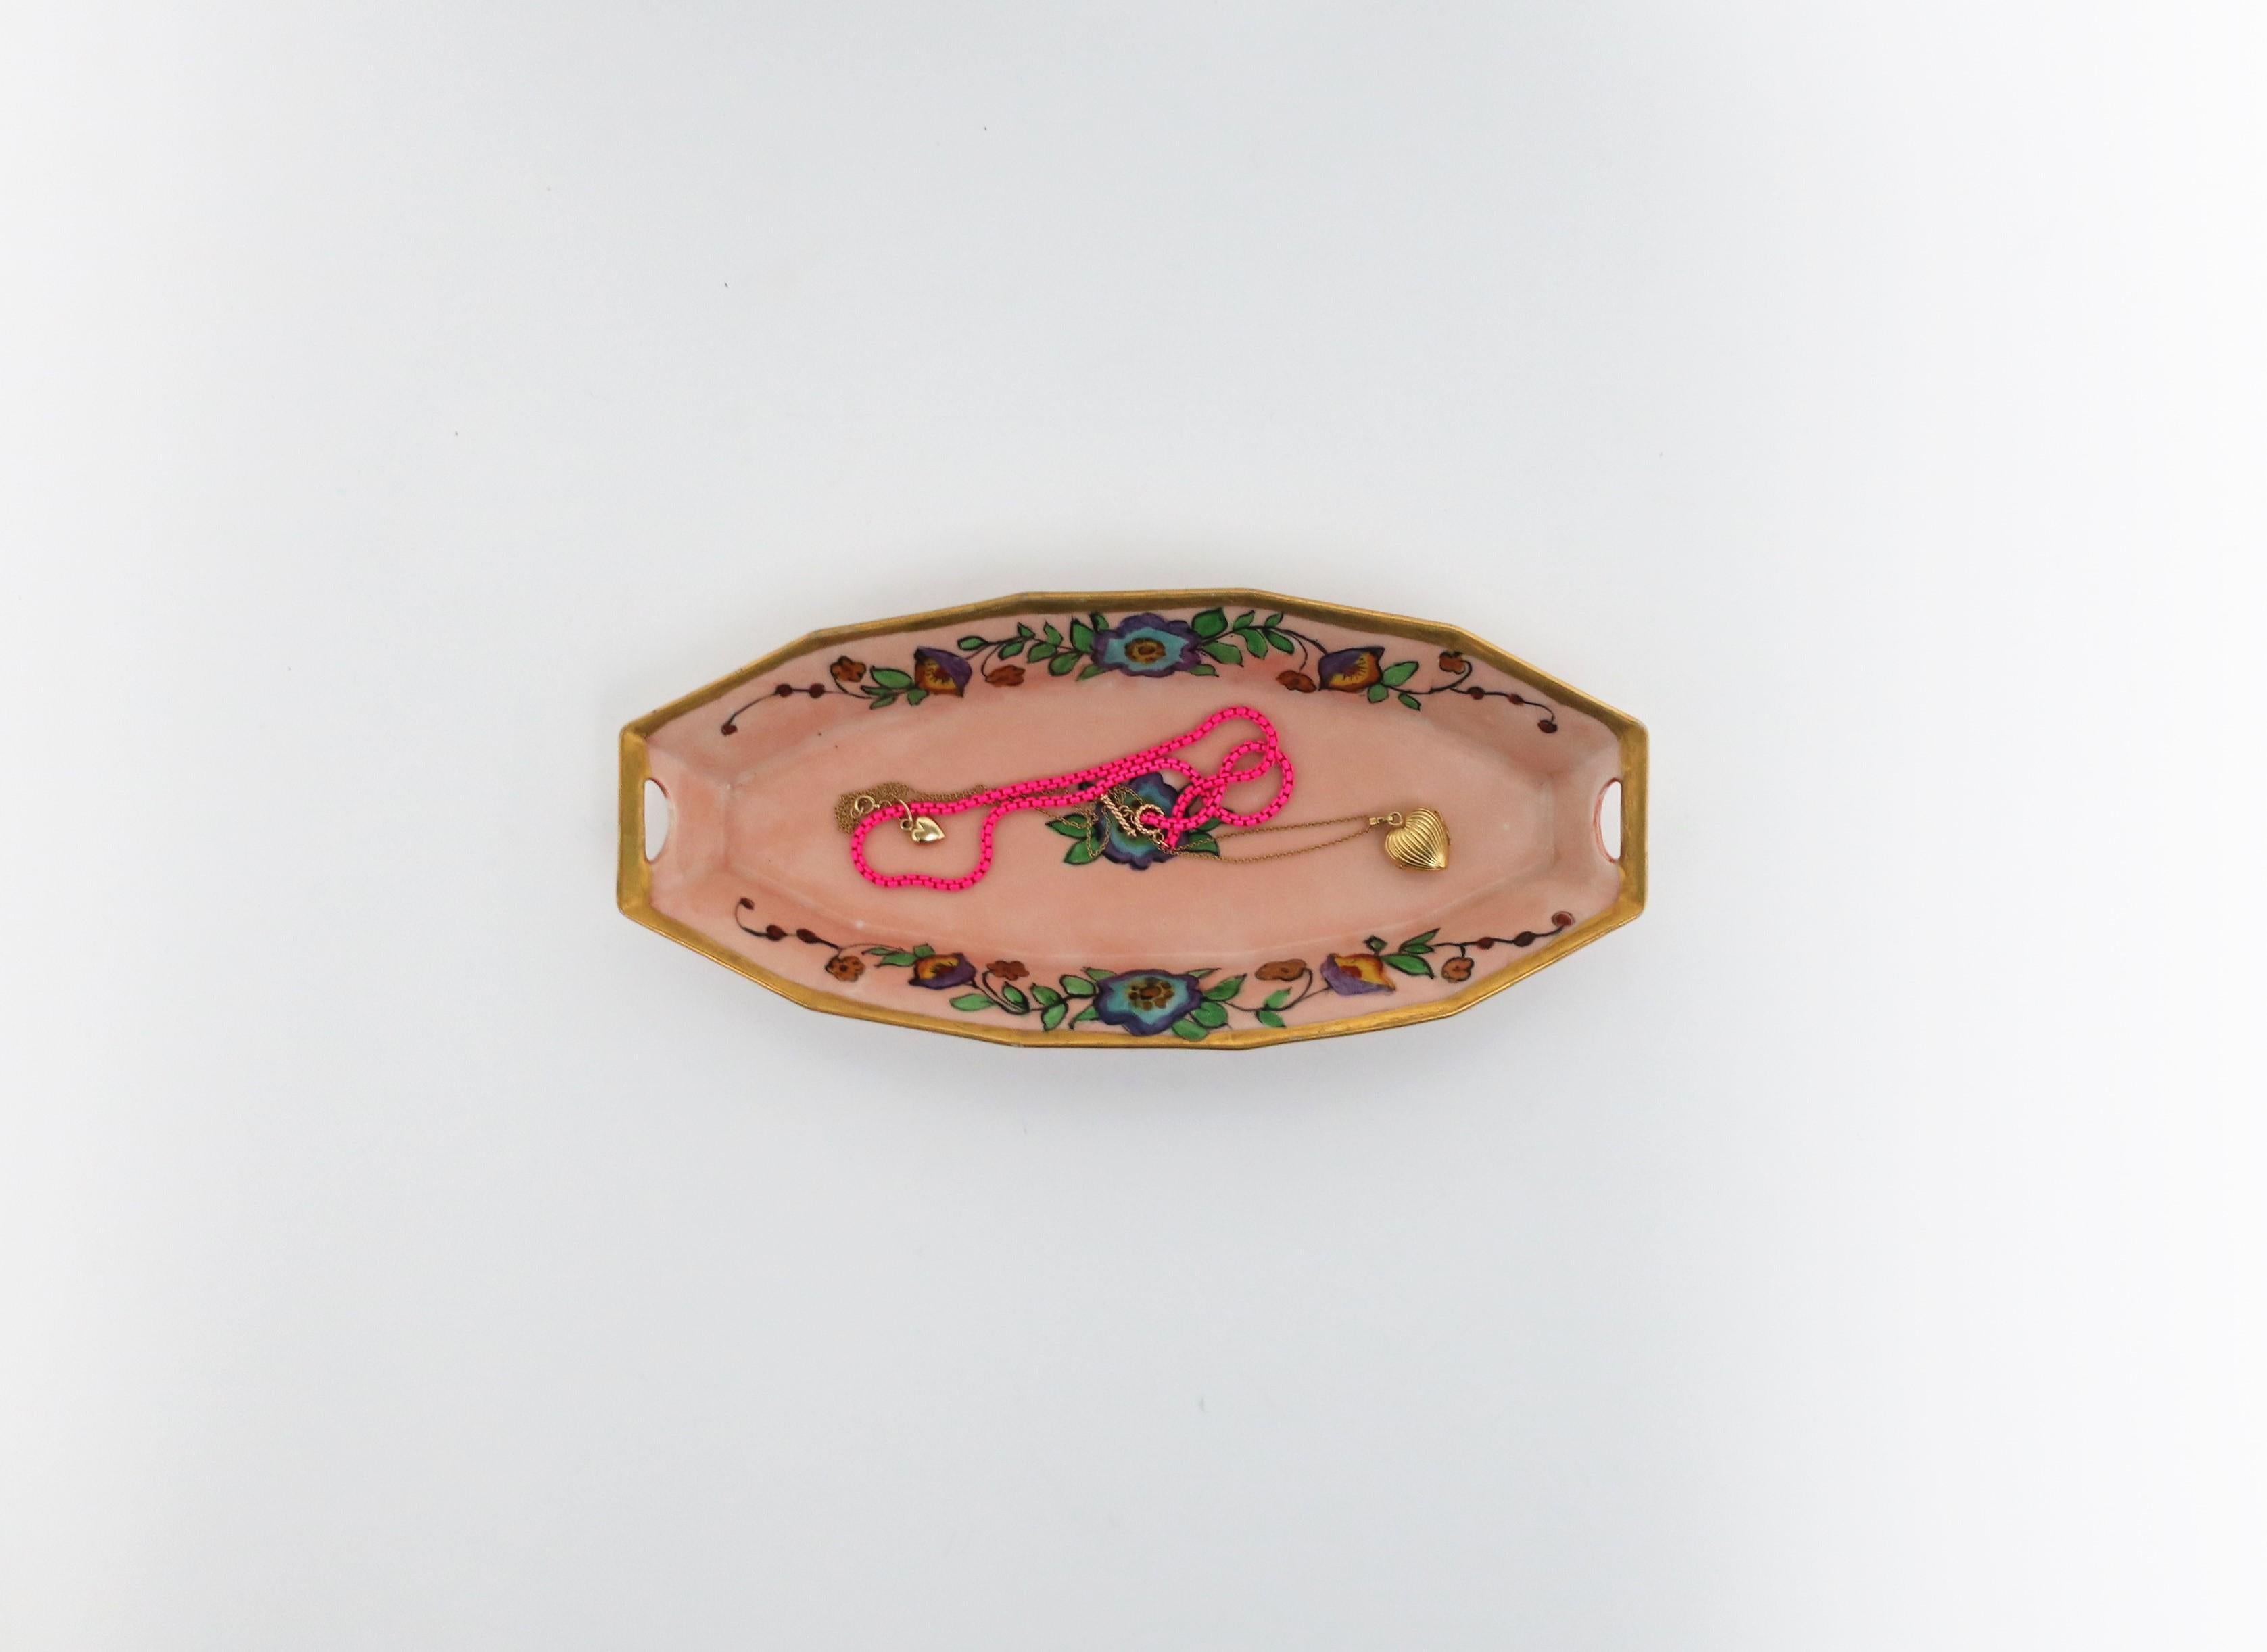 Magnifique plat oblong en porcelaine rose et or de style Art nouveau autrichien, vers le début du XXe siècle, Autriche. La pièce présente un motif peint à la main de fleurs et de feuilles au centre et sur les côtés, avec un bord doré scintillant.